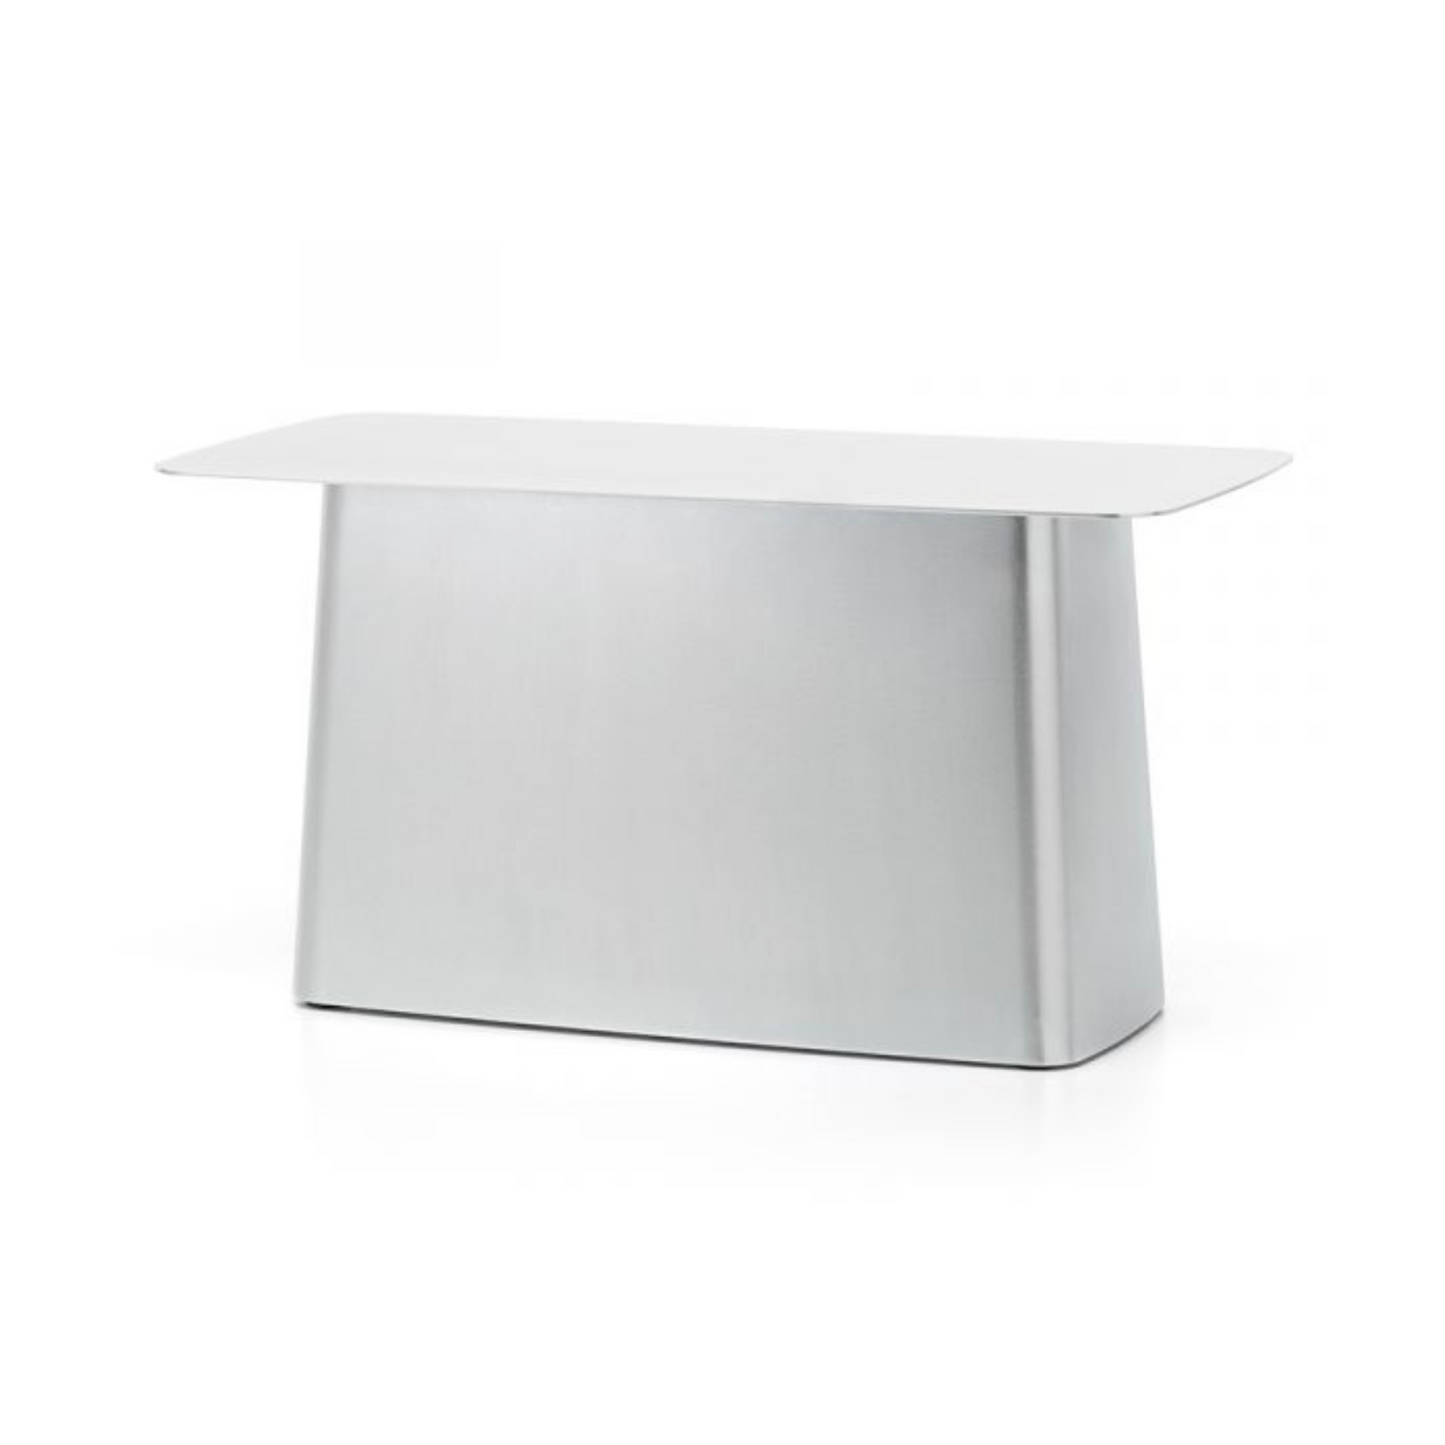 Vitra Metal Side Table Large galvanised